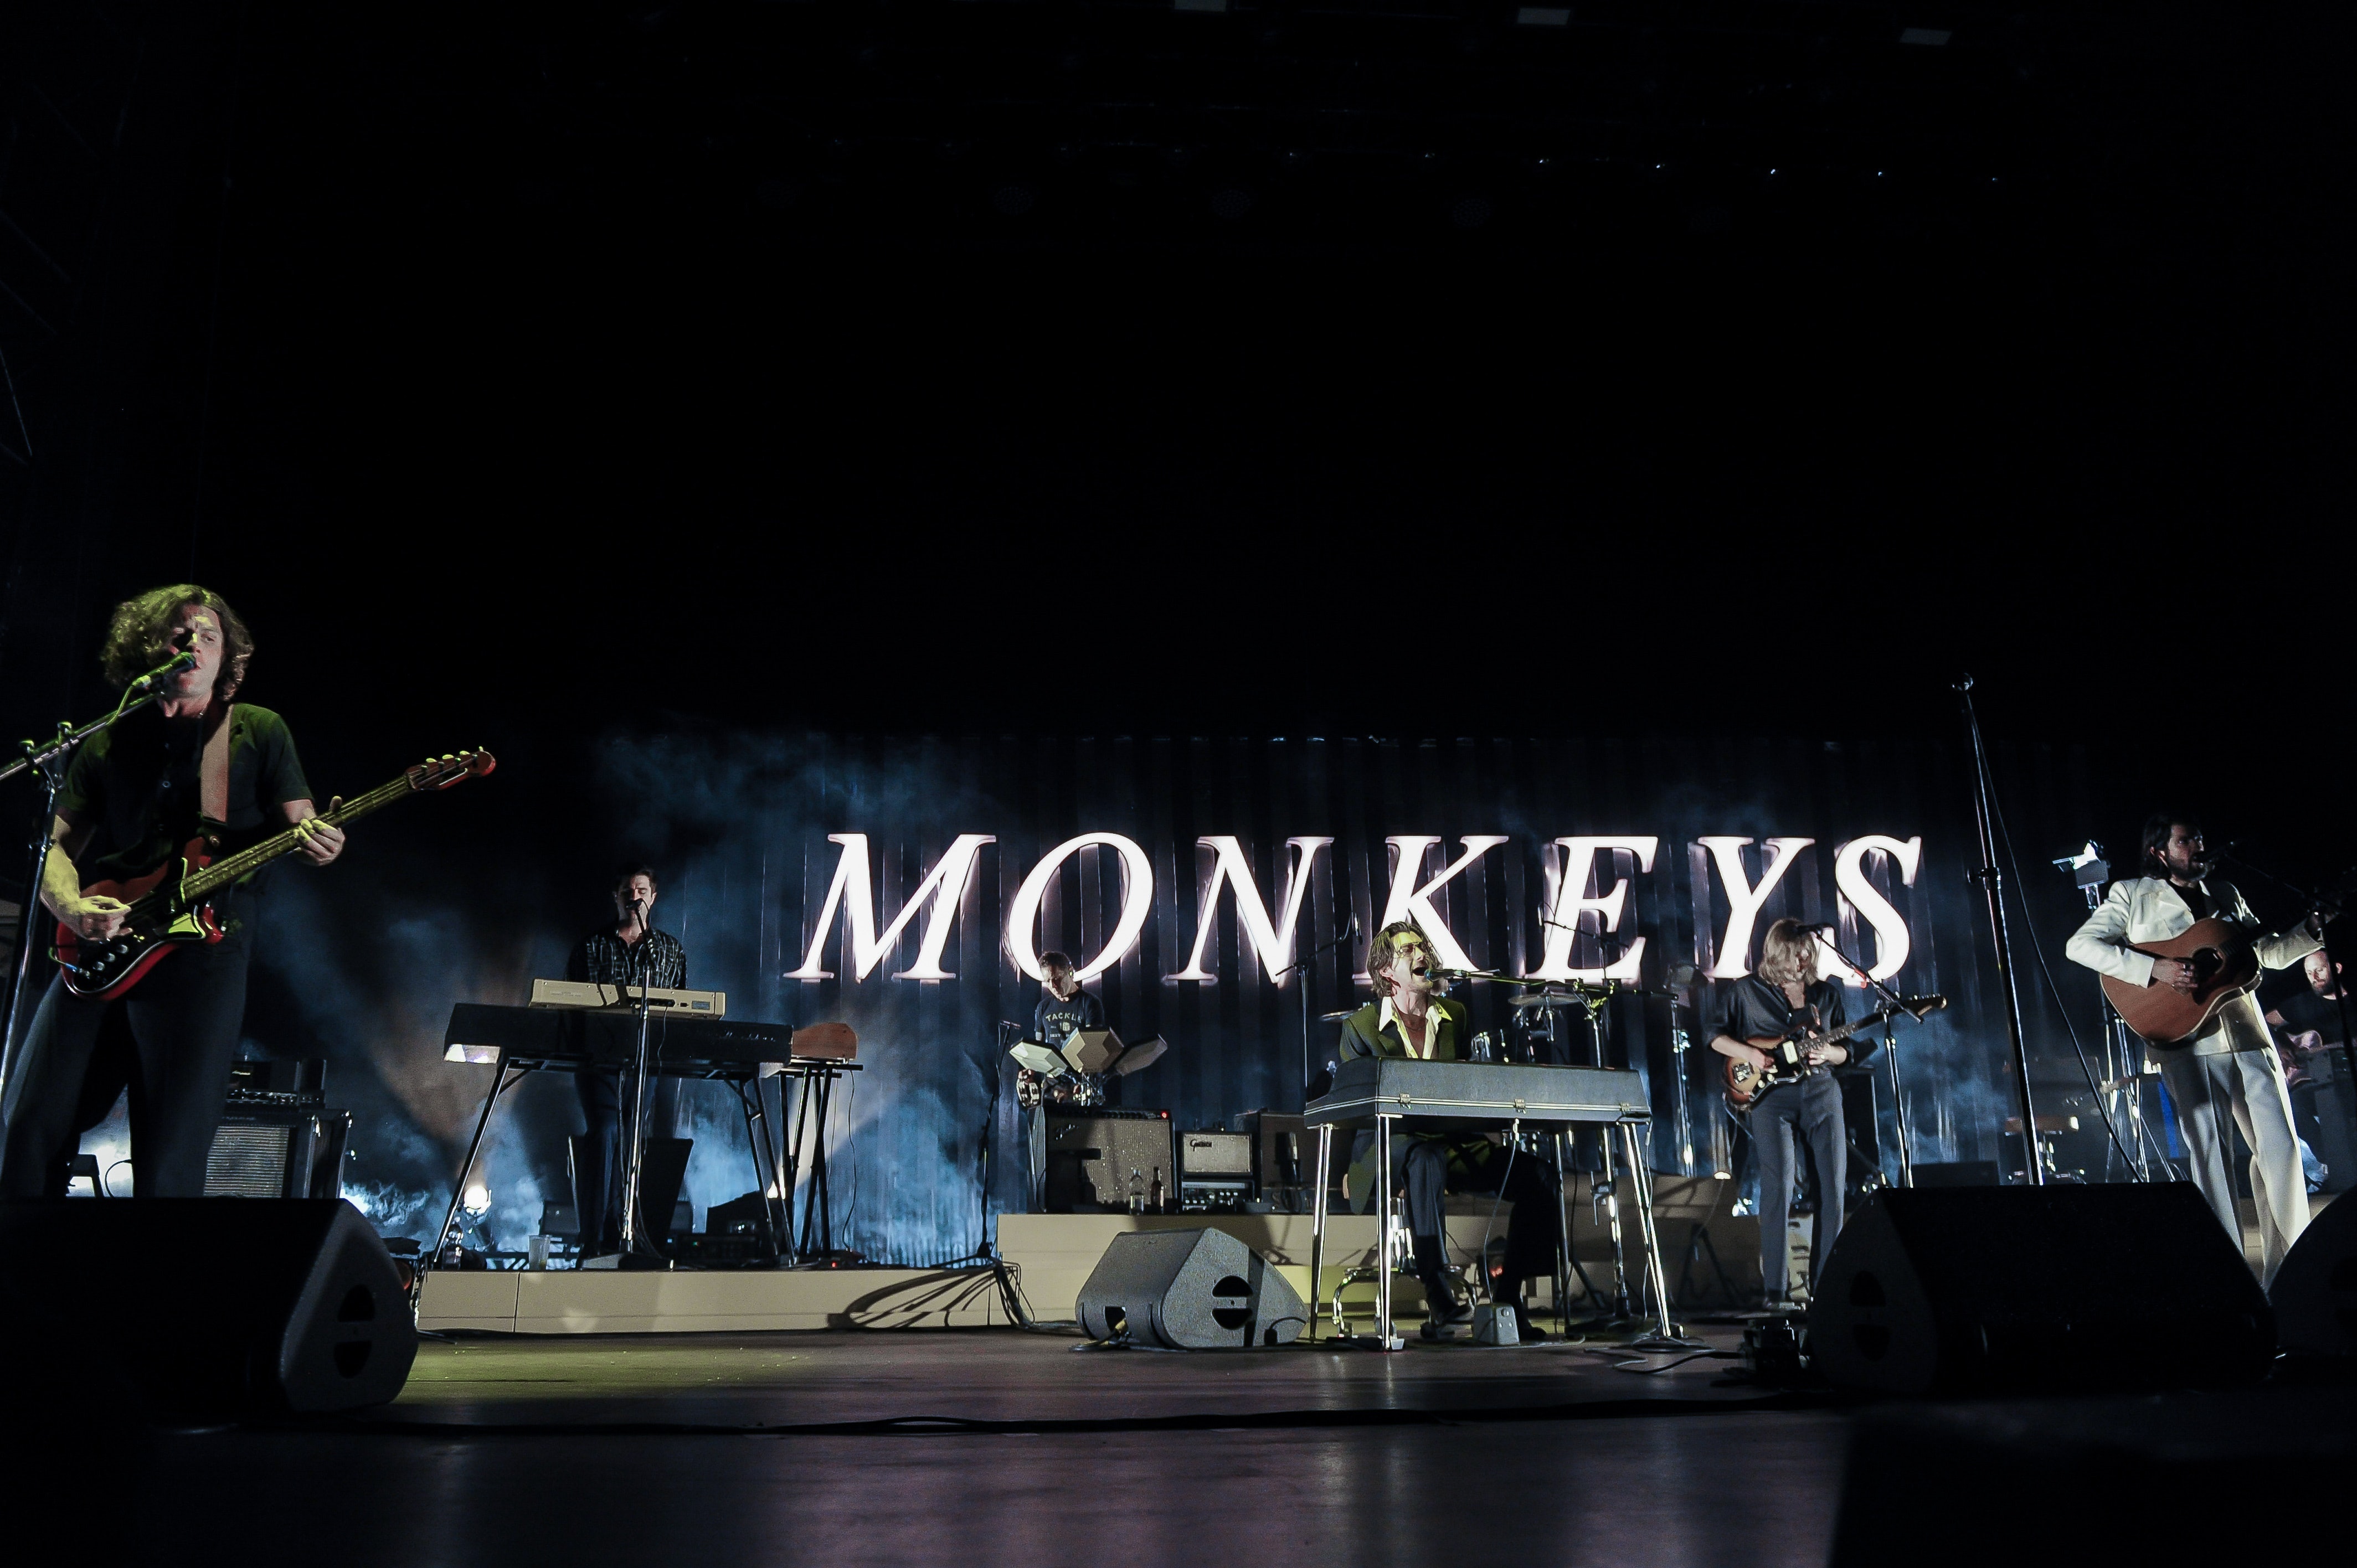 Οι Arctic Monkeys ανακοίνωσαν επιτέλους 2 παραστάσεις στο Ηνωμένο Βασίλειο για το 2022